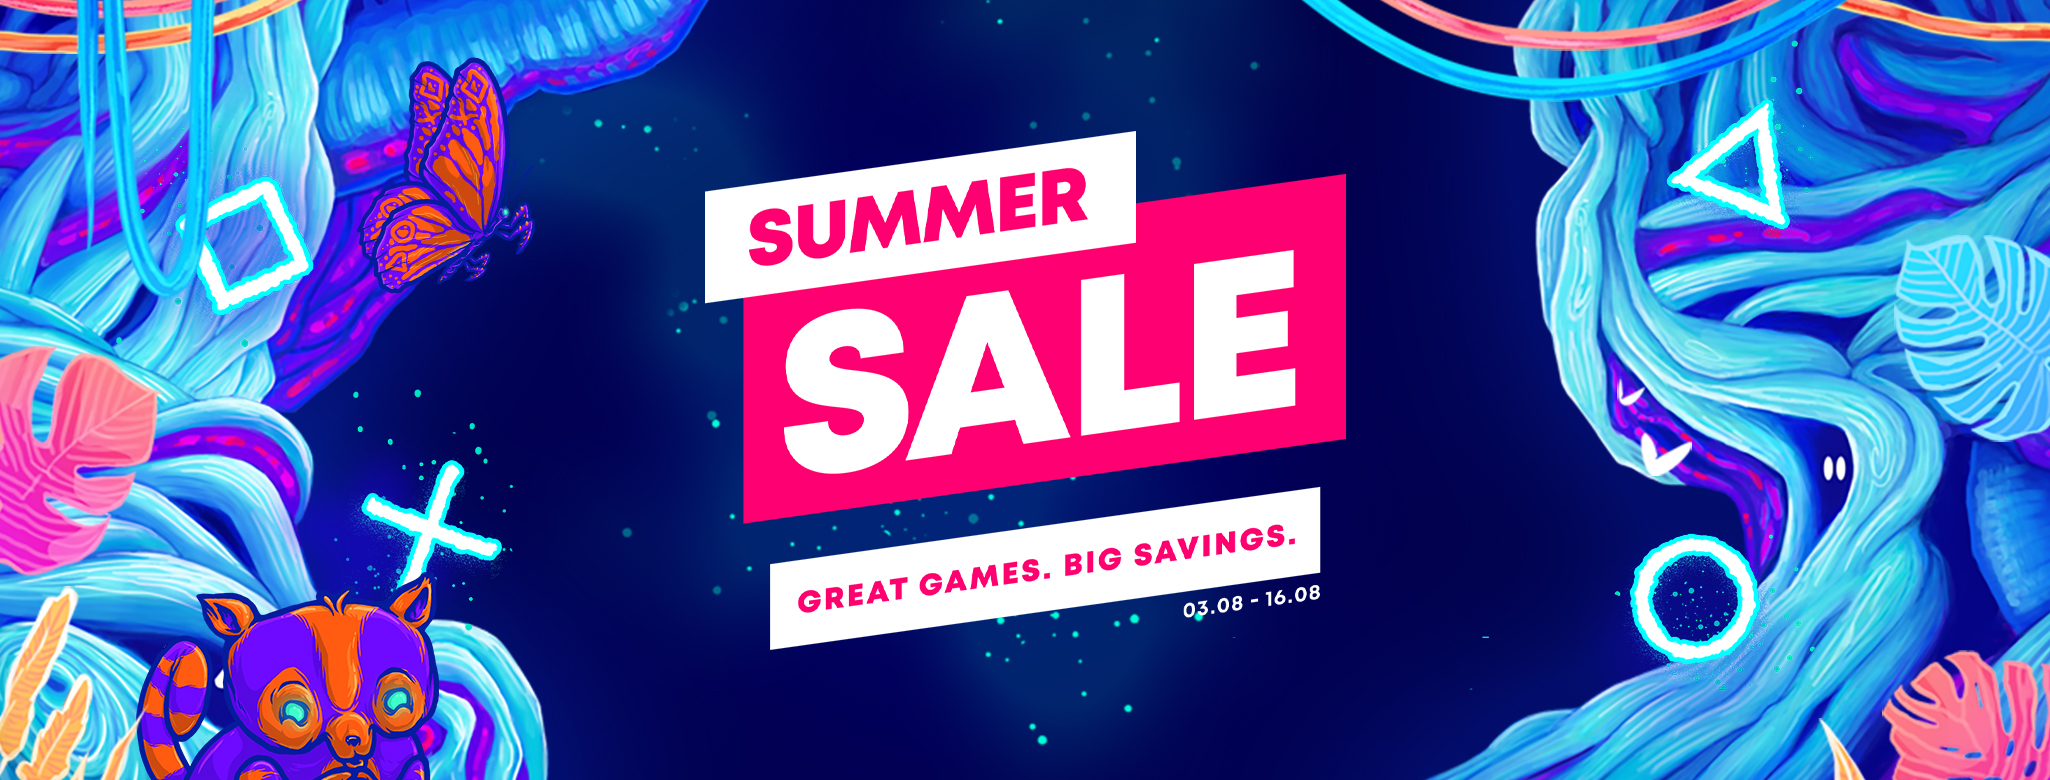 Sony tawar promosi Summer Sale bagi PlayStation bermula esok - diskaun sehingga 80% 3